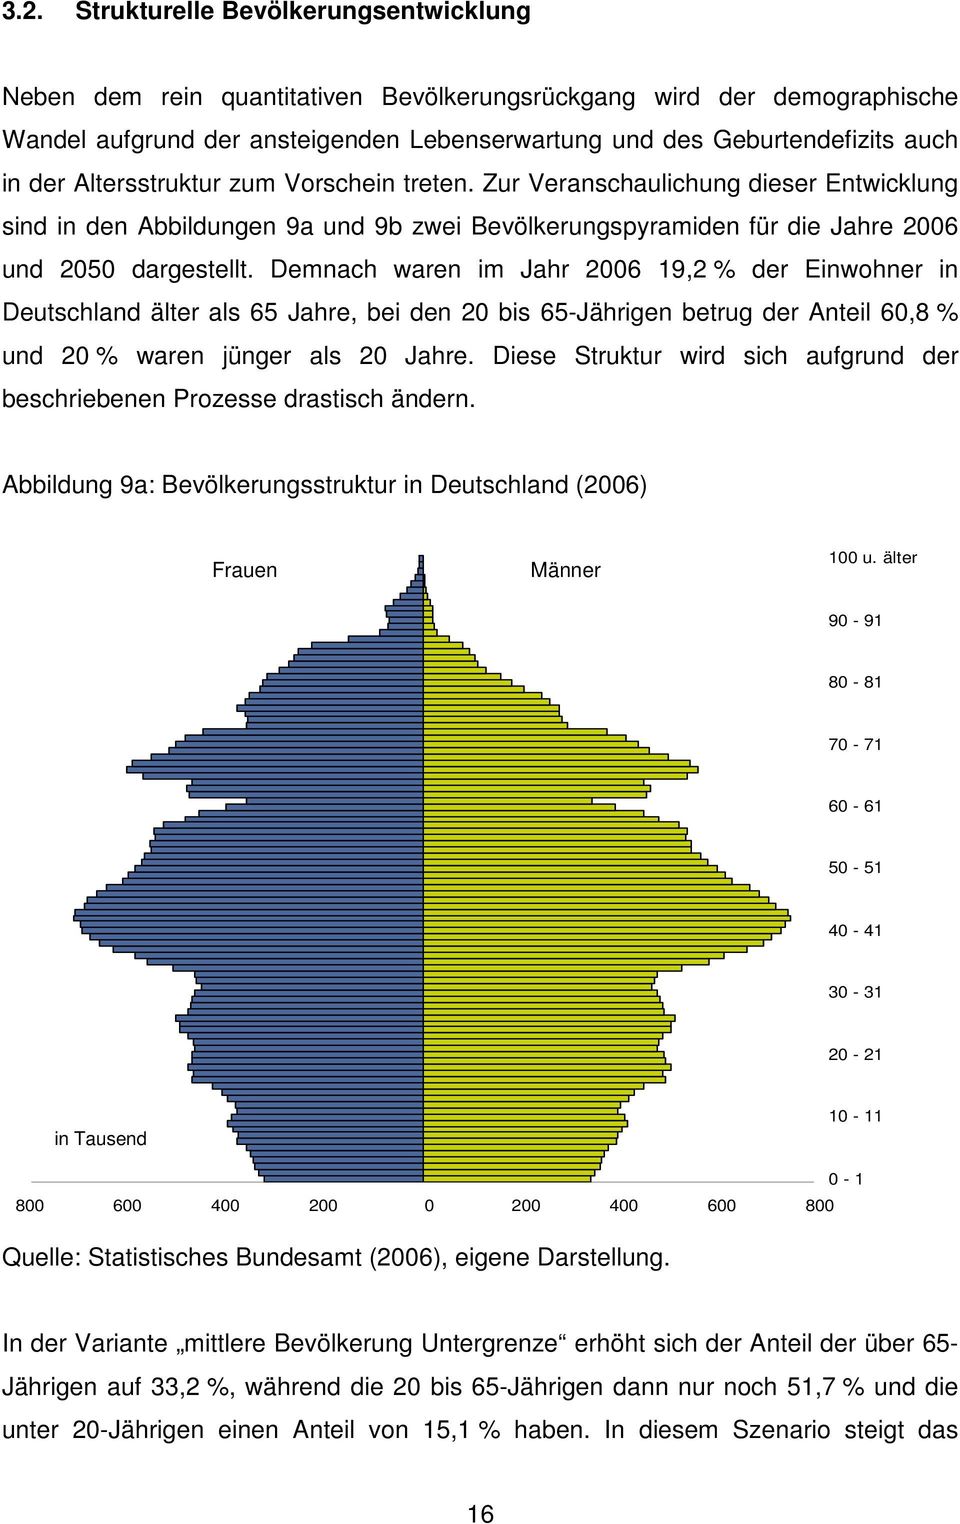 Demnach waren im Jahr 2006 19,2 % der Einwohner in Deutschland älter als 65 Jahre, bei den 20 bis 65-Jährigen betrug der Anteil 60,8 % und 20 % waren jünger als 20 Jahre.